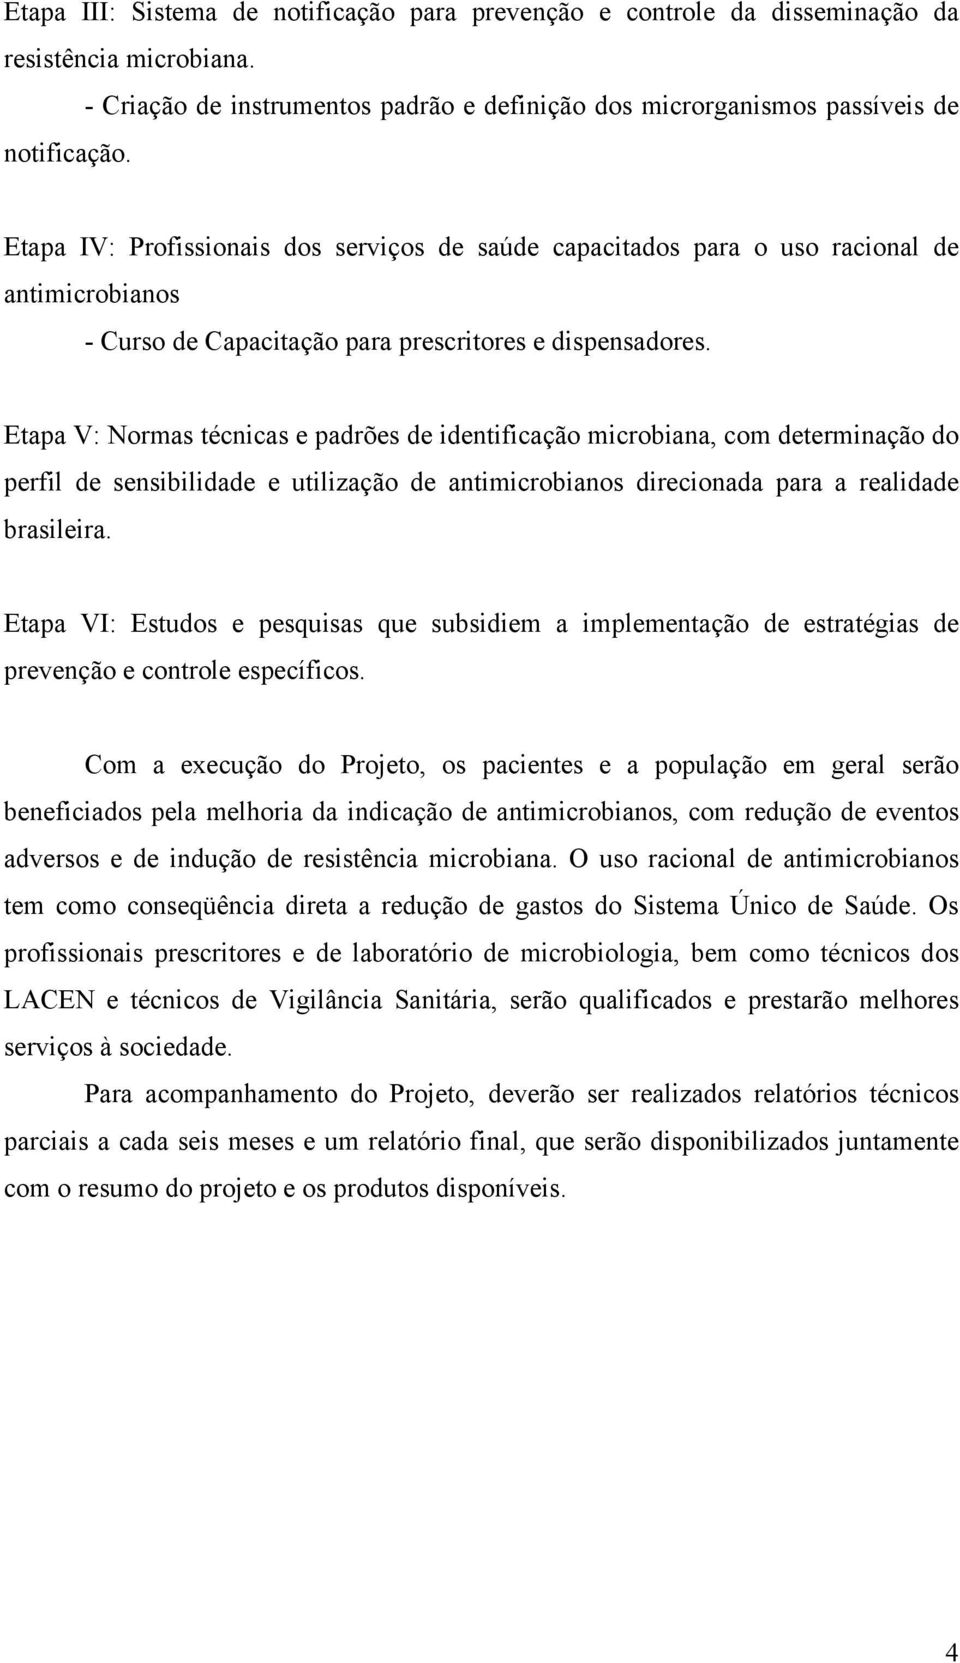 Etapa V: Normas técnicas e padrões de identificação microbiana, com determinação do perfil de sensibilidade e utilização de antimicrobianos direcionada para a realidade brasileira.